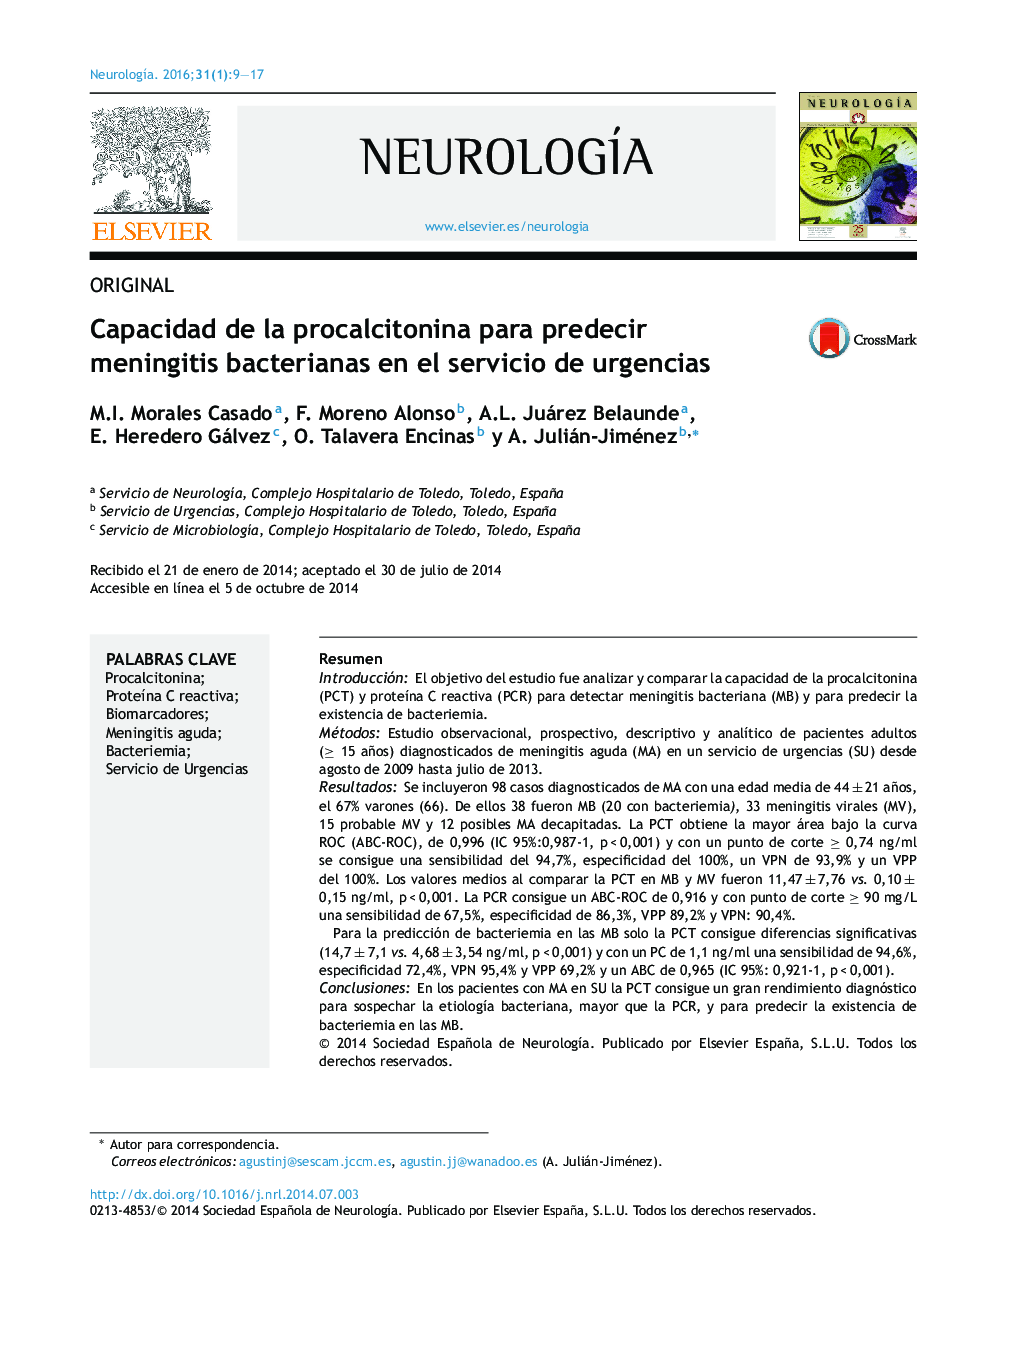 Capacidad de la procalcitonina para predecir meningitis bacterianas en el servicio de urgencias